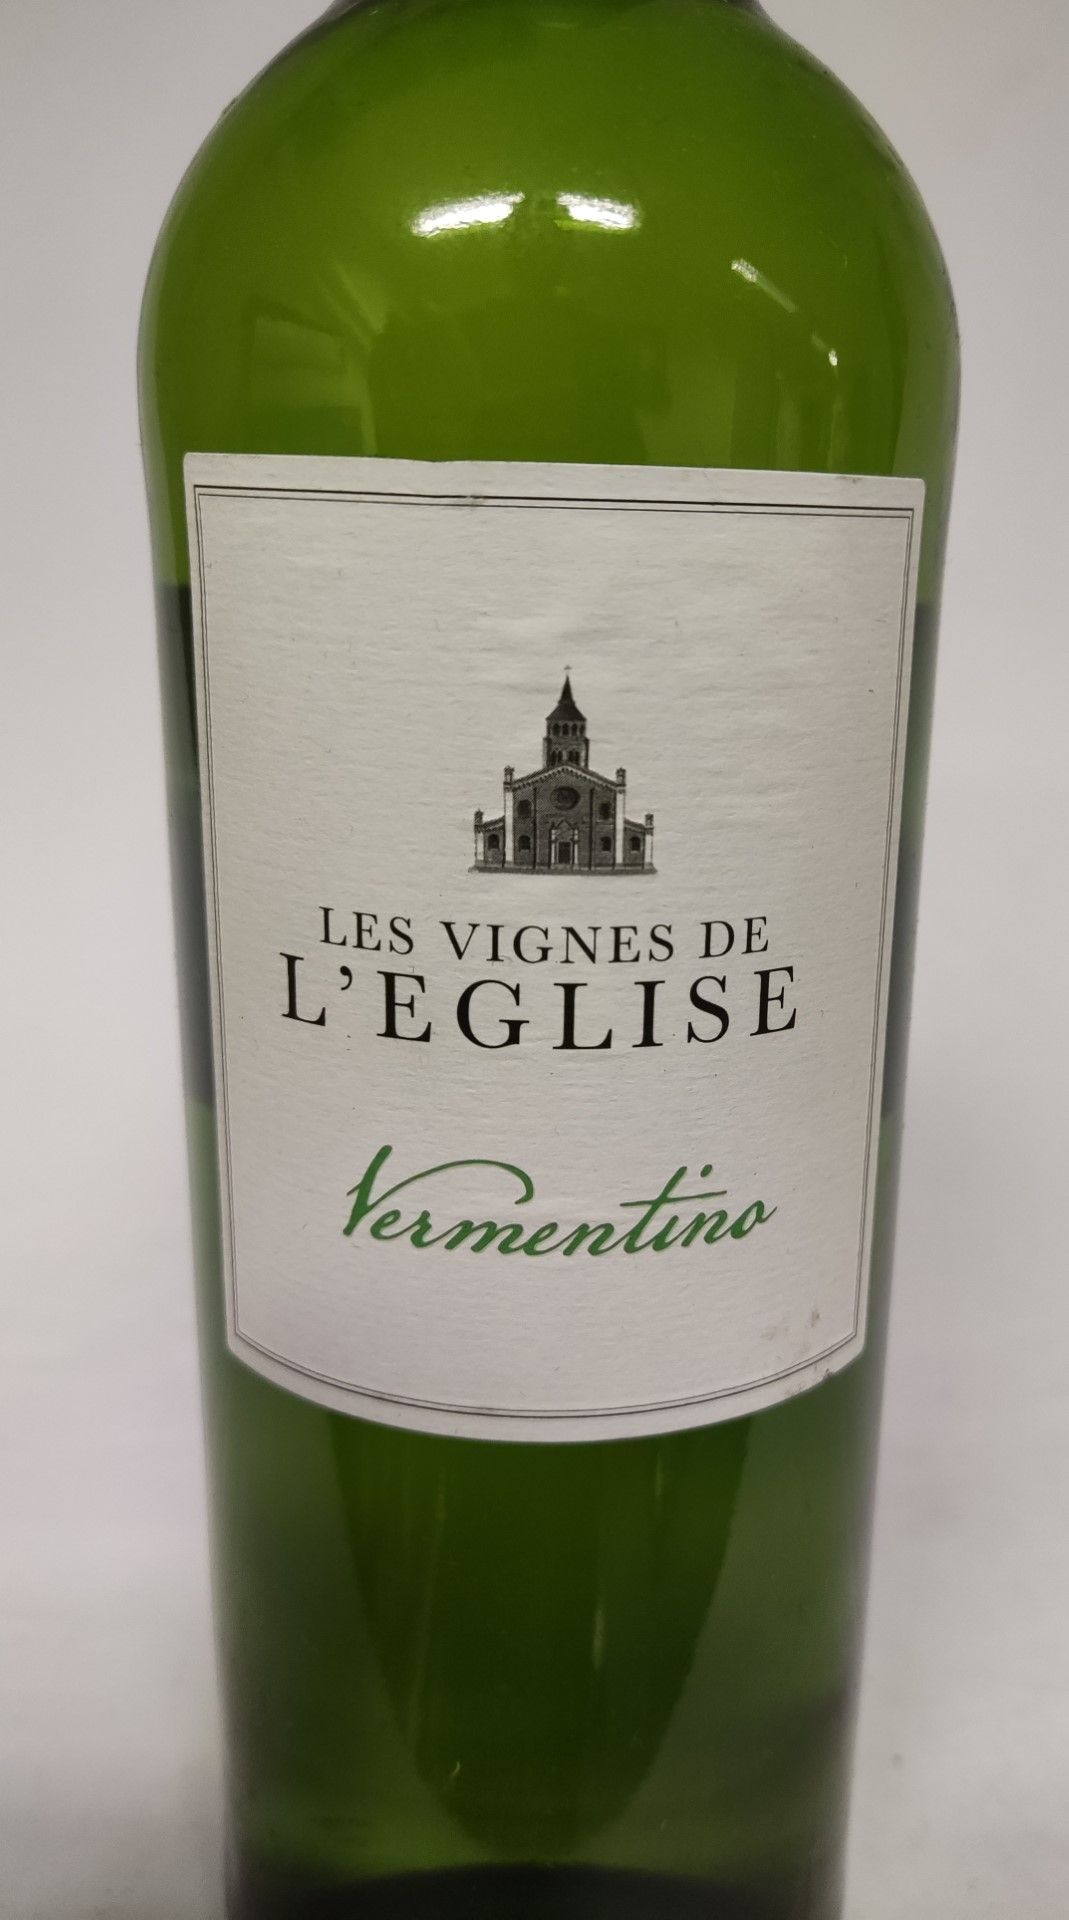 1 x Bottle of Les Vignes De L'Eglise Vermentino - Image 2 of 5